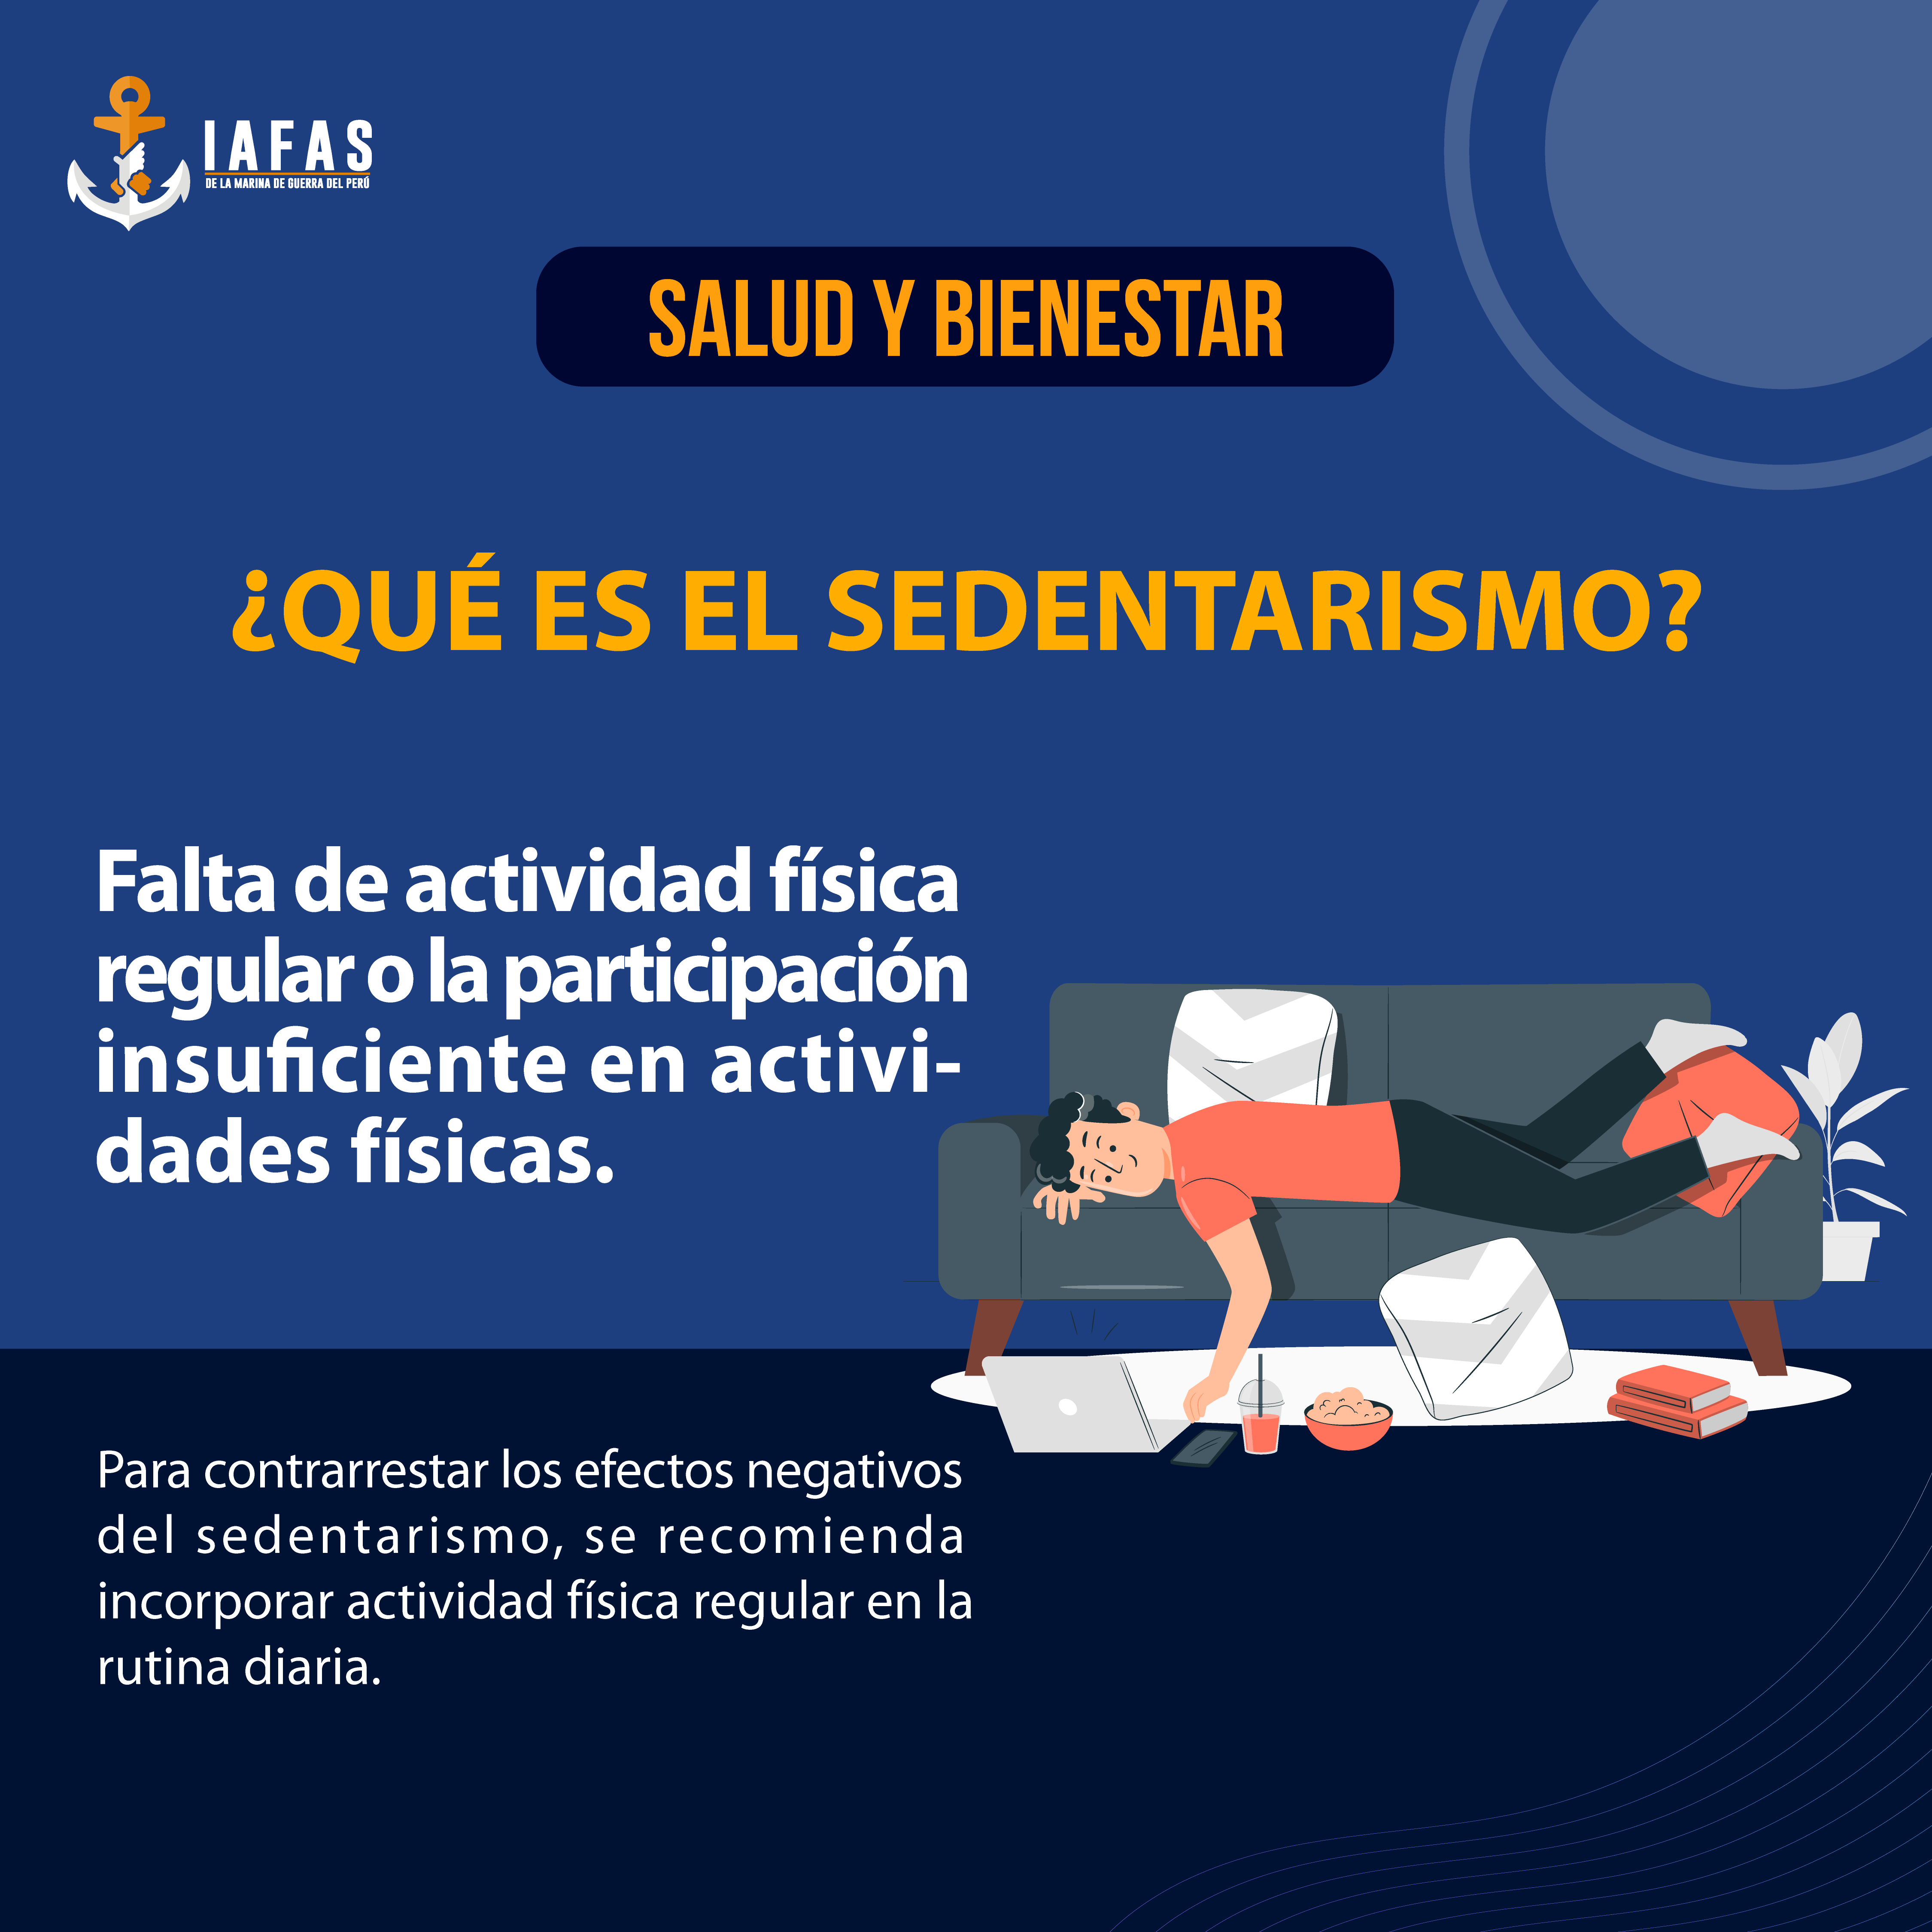 ¿Qué es el sedentarismo?